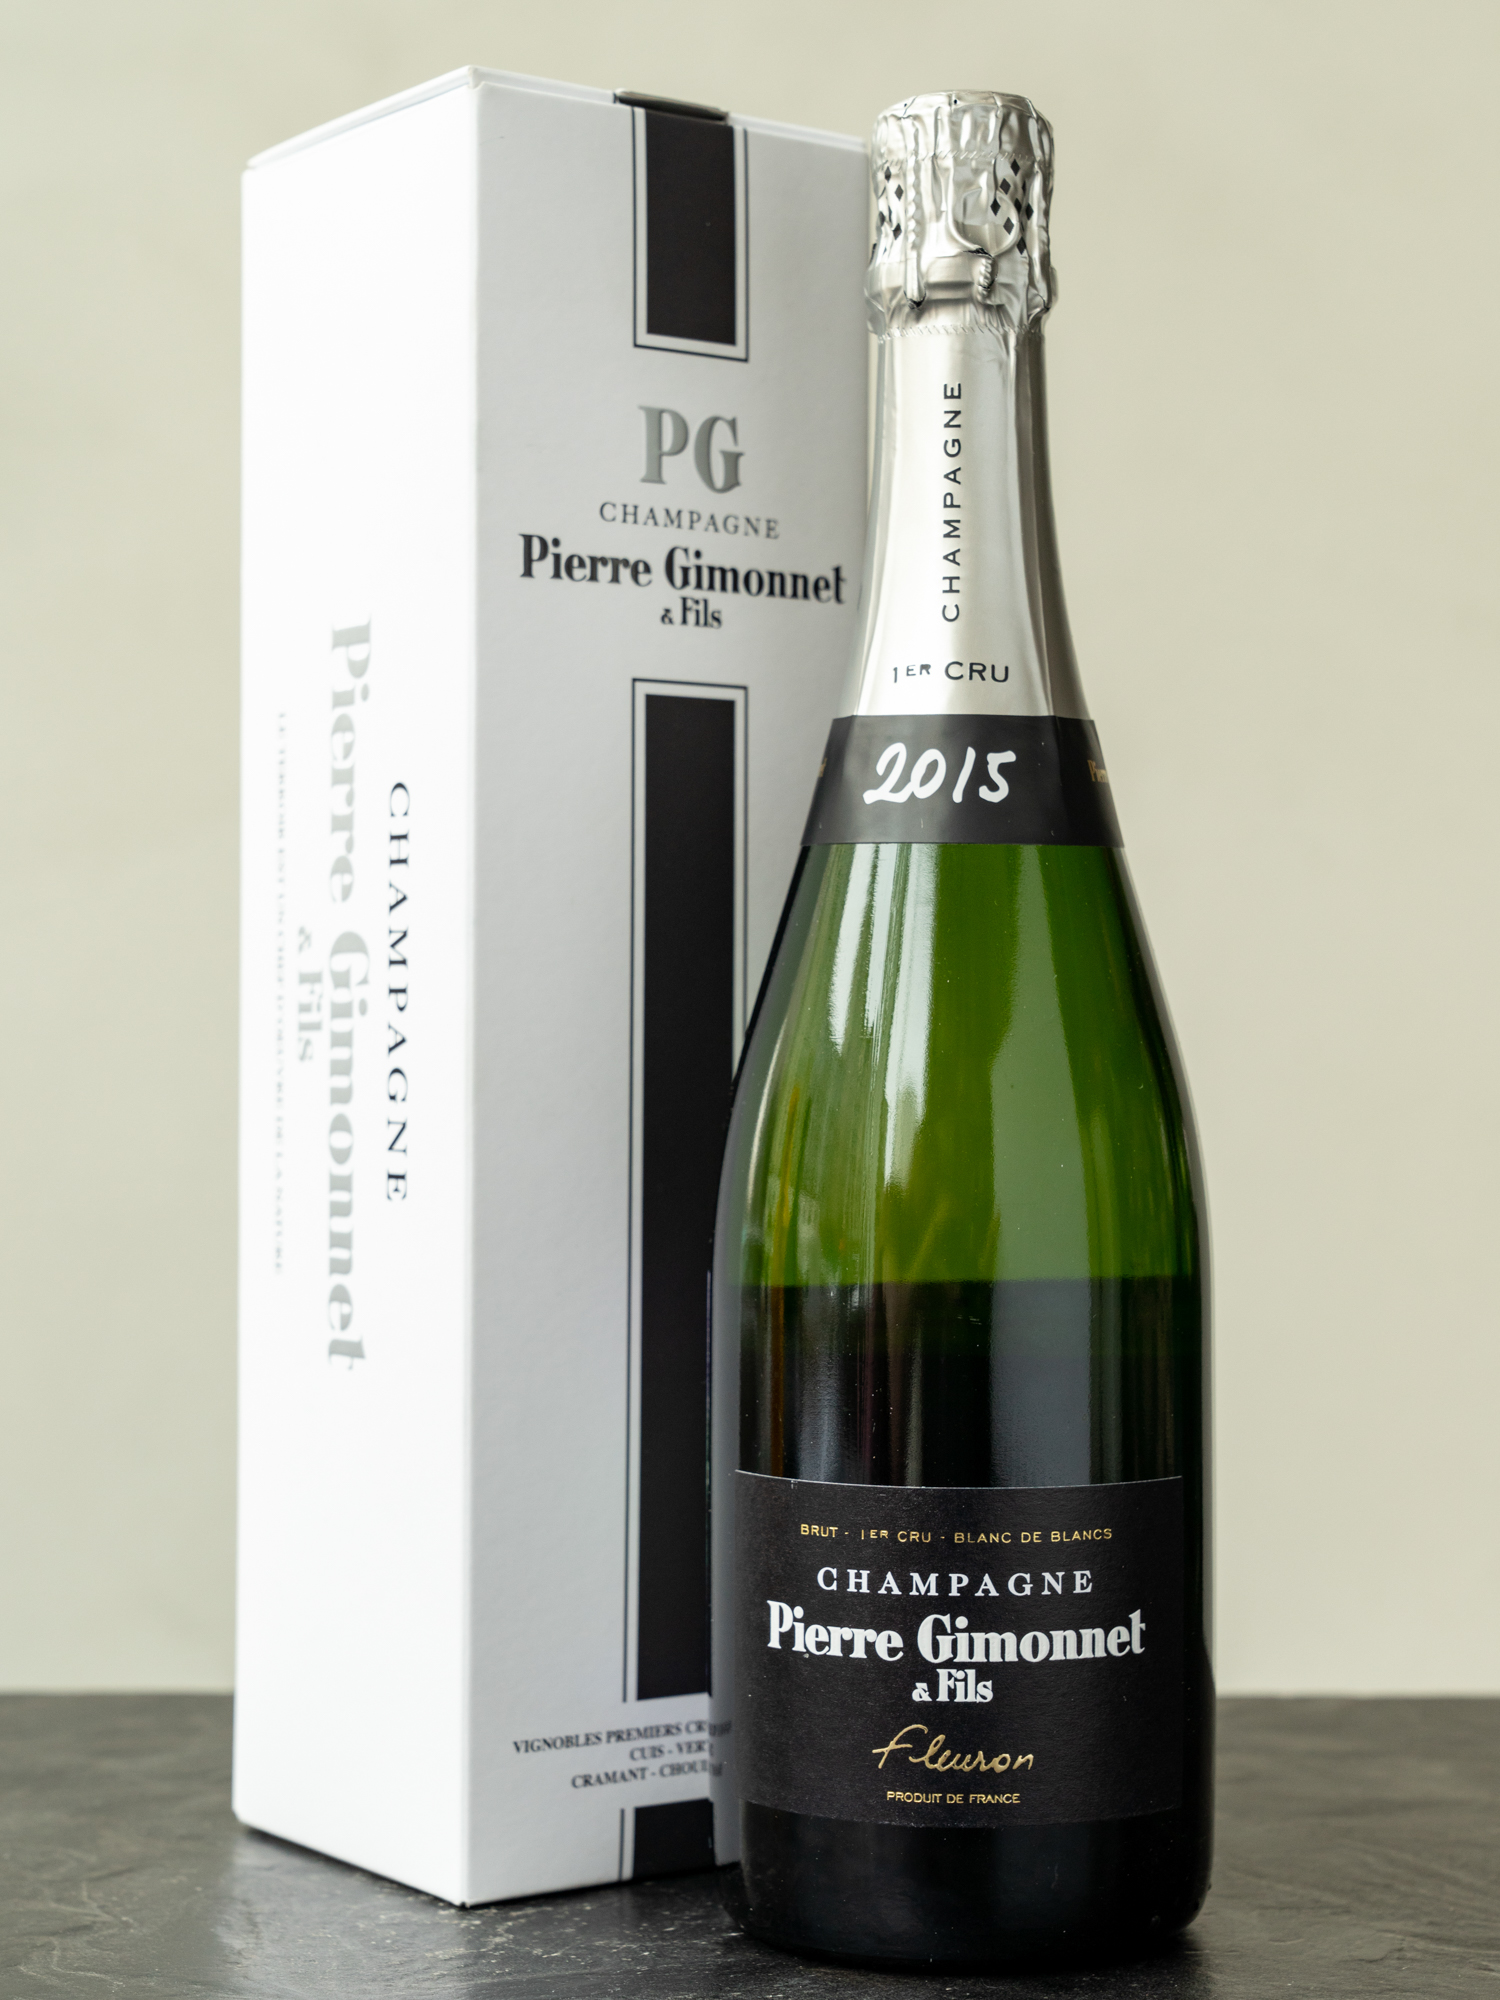 Шампанское Pierre Gimonnet & Fils Fleuron Blanc de Blancs Brut 1er Cru Champagne / Шампань Пьер Жимоне э Фис Флерон Премье Крю Брют